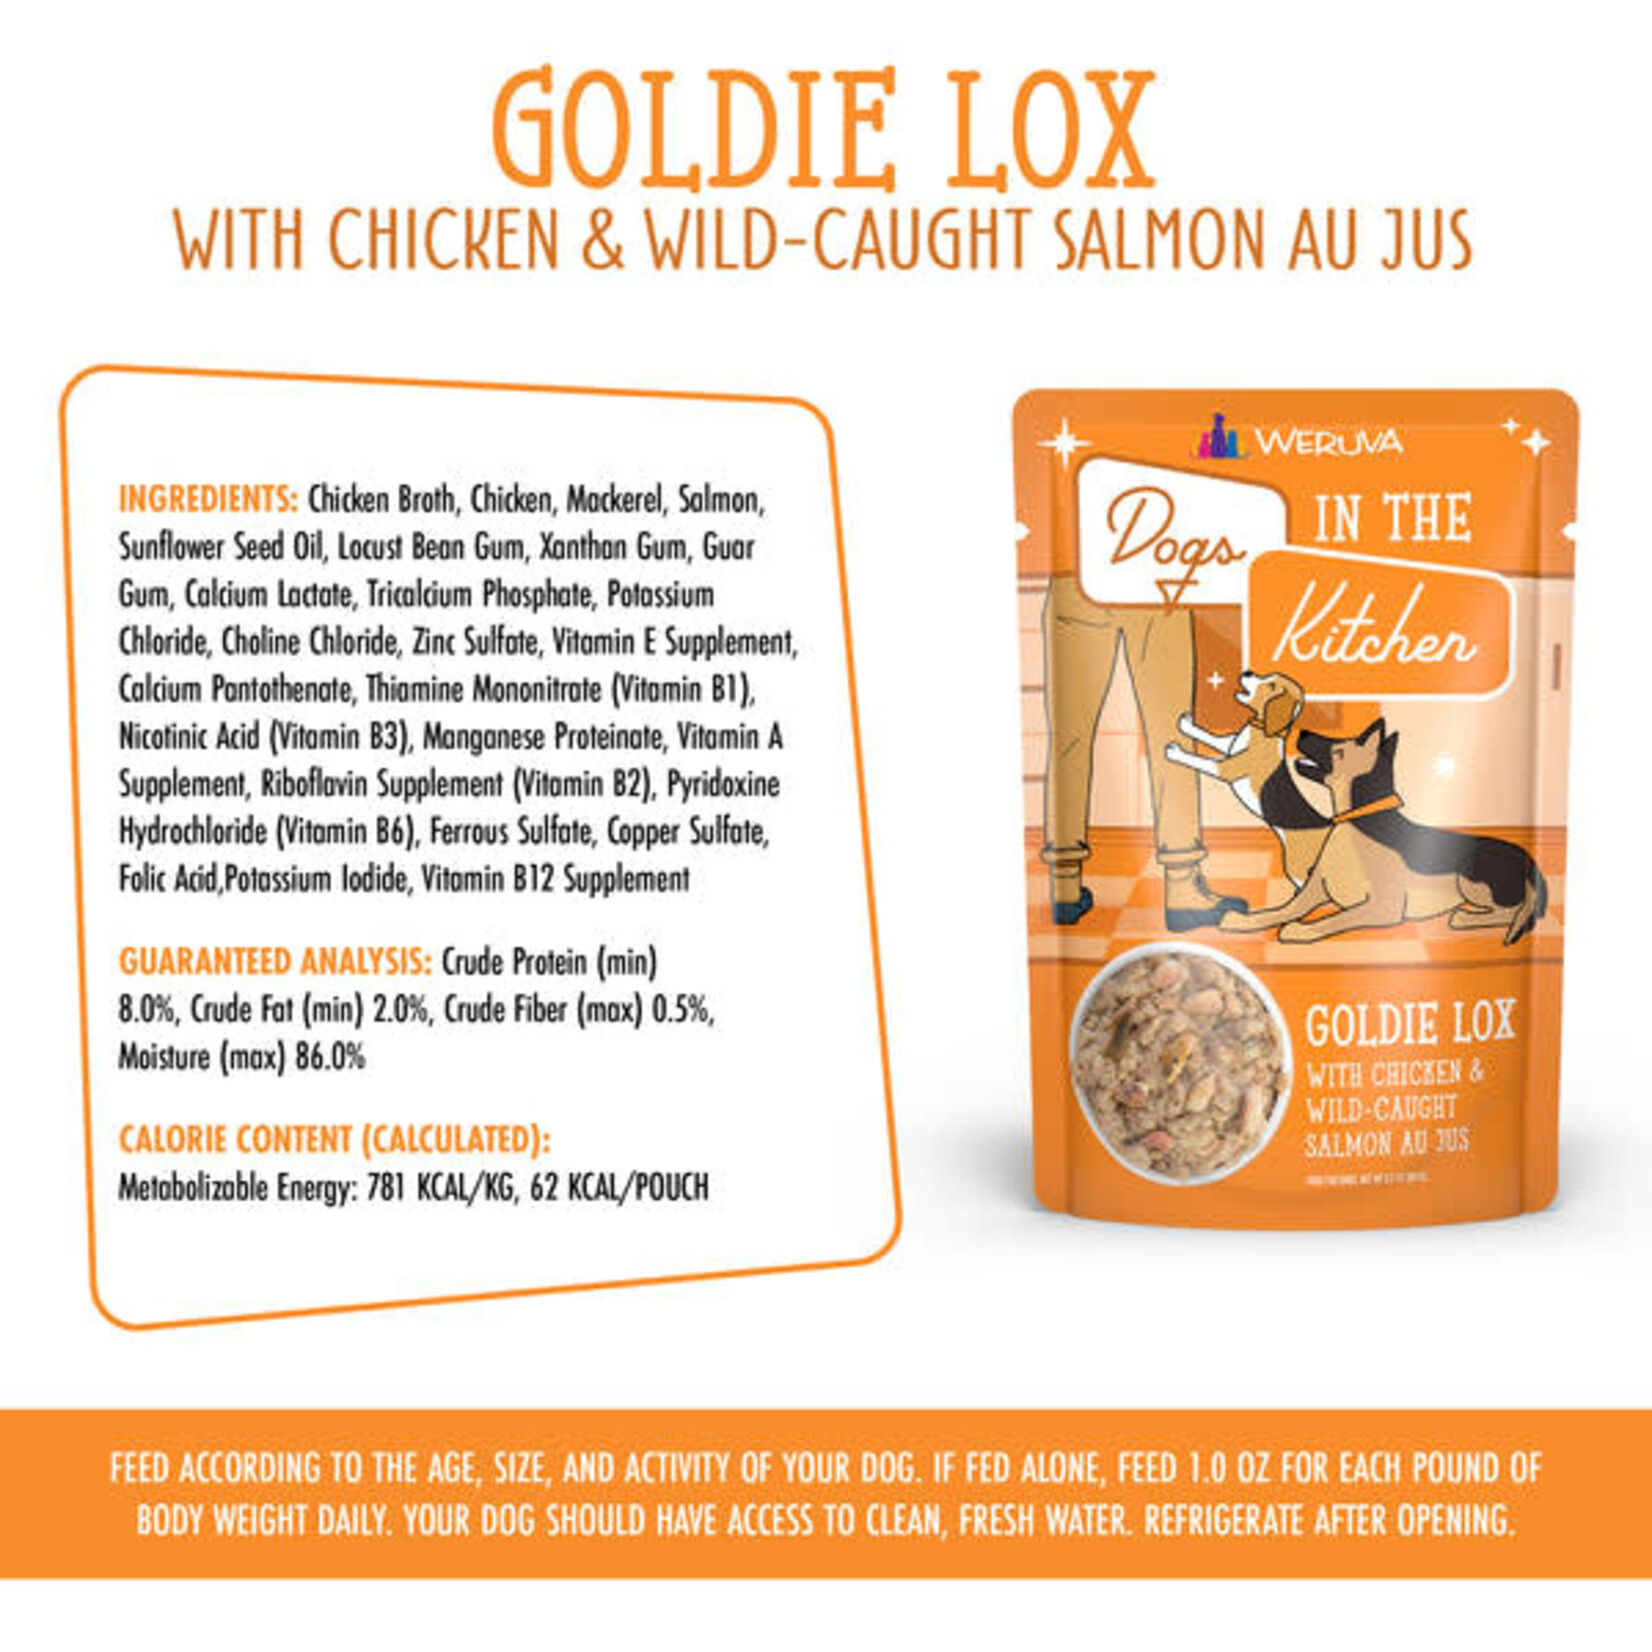 Weruva Dogs in the Kitchen - Goldie Lox with Chicken & Wild Caught Salmon Au Jus